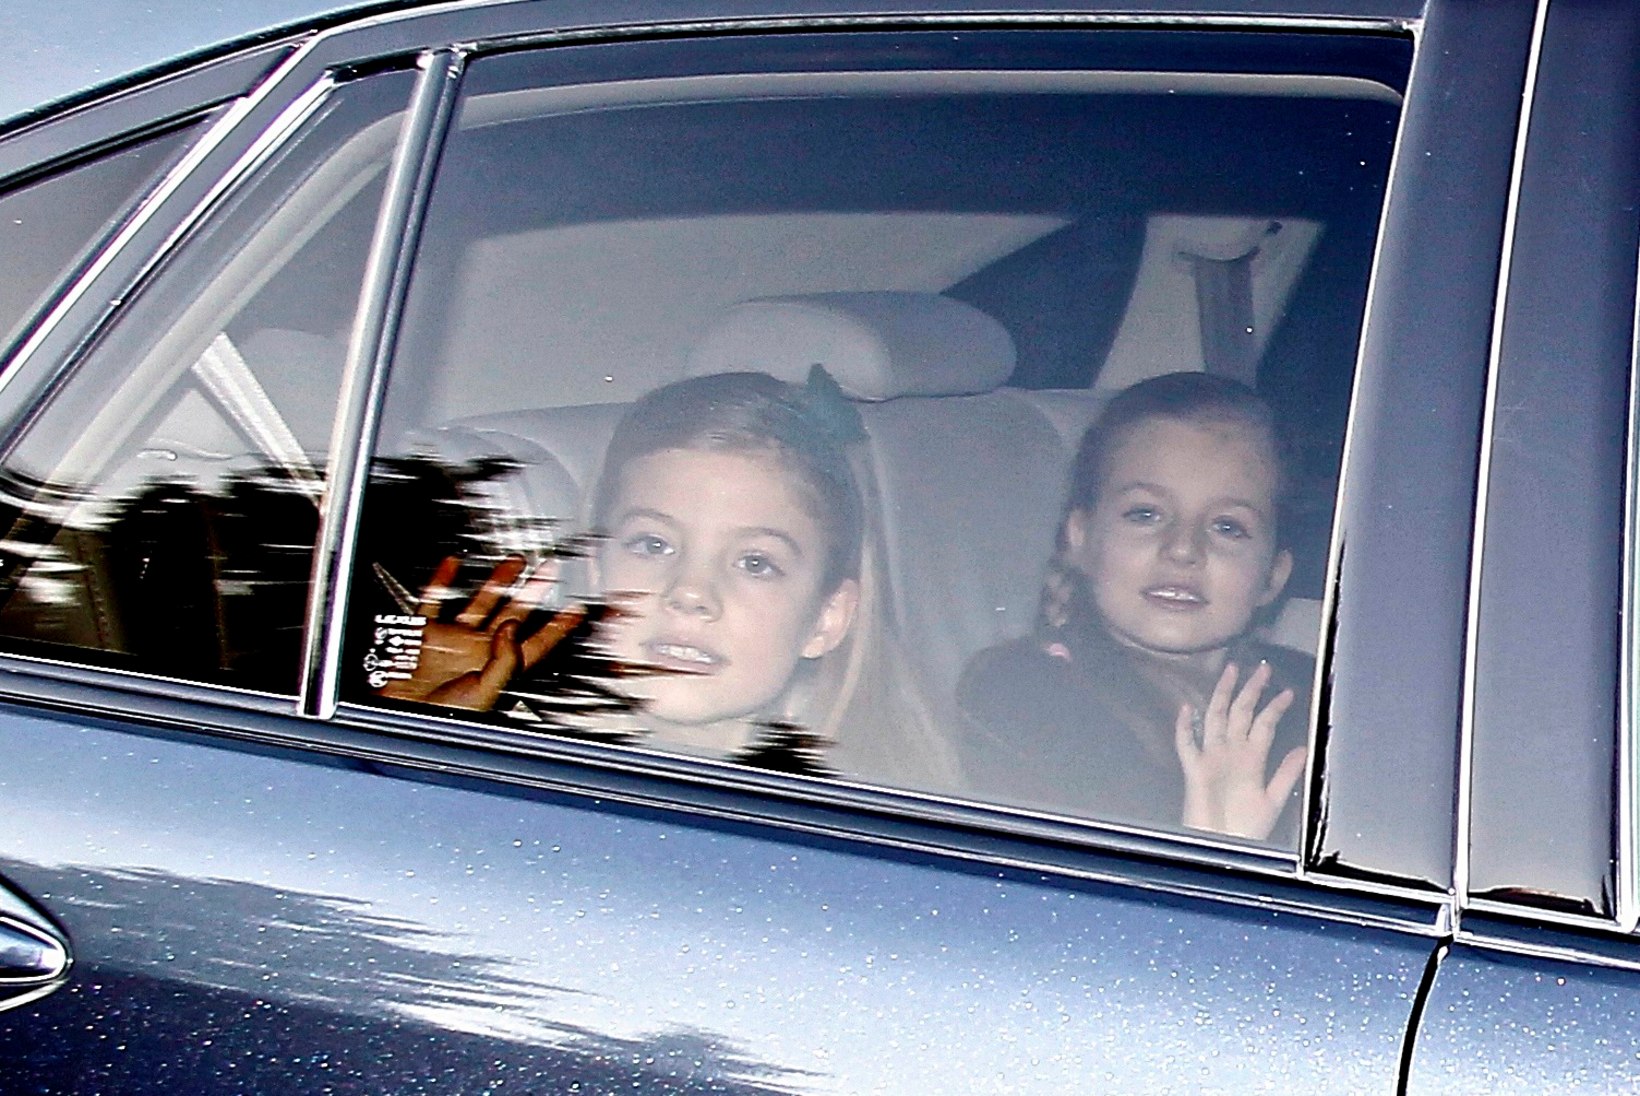 FOTOD: ei mingeid sohvreid! Hispaania kuningas sõidutas oma pere vanaisa juurde ise